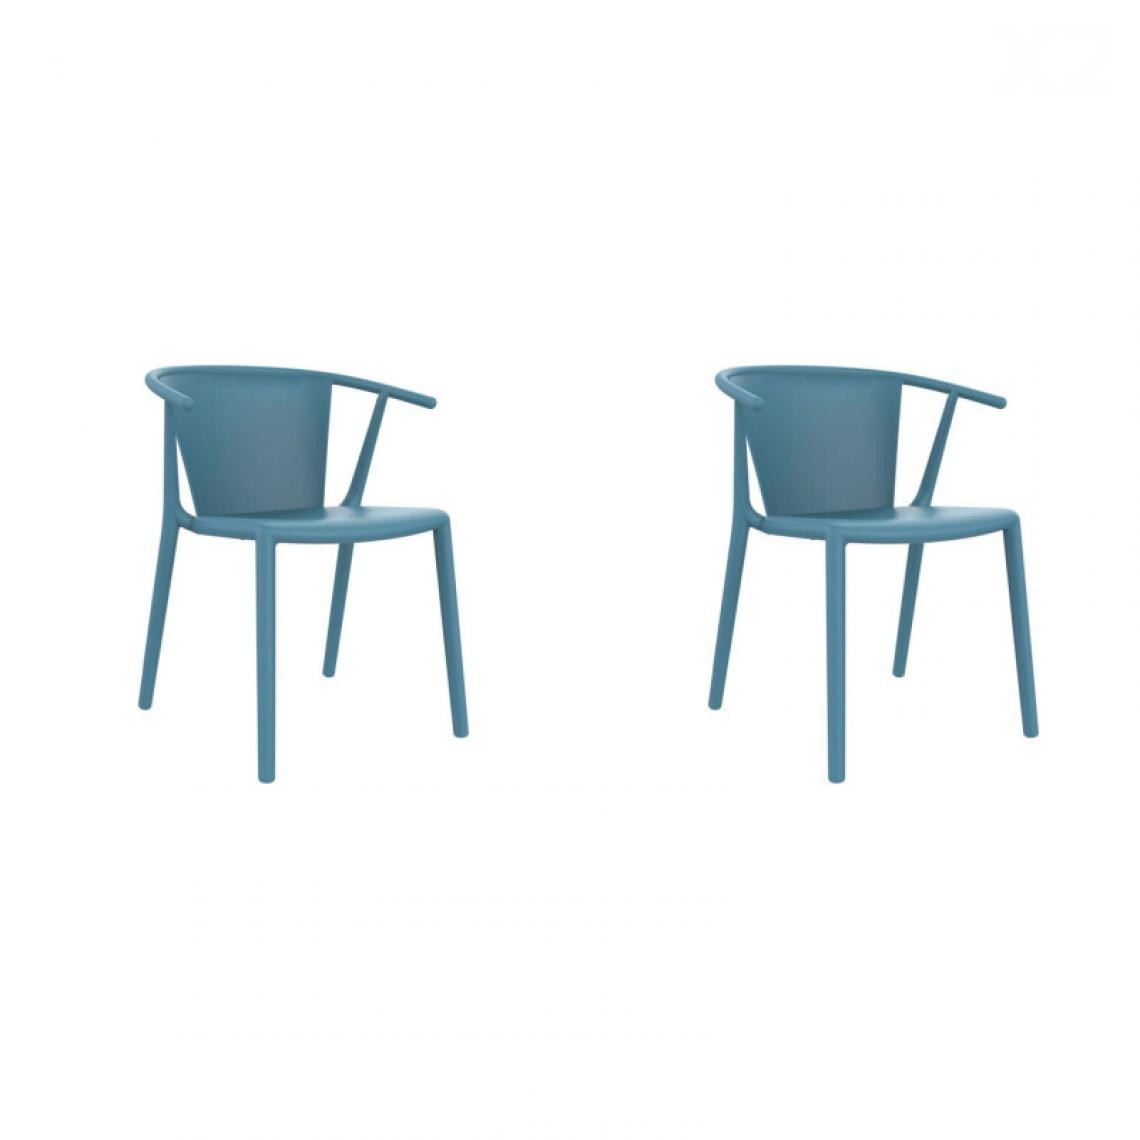 Resol - Set 2 Chaise Steely - RESOL - Bleu RétroFibre de verre, Polypropylène - Chaises